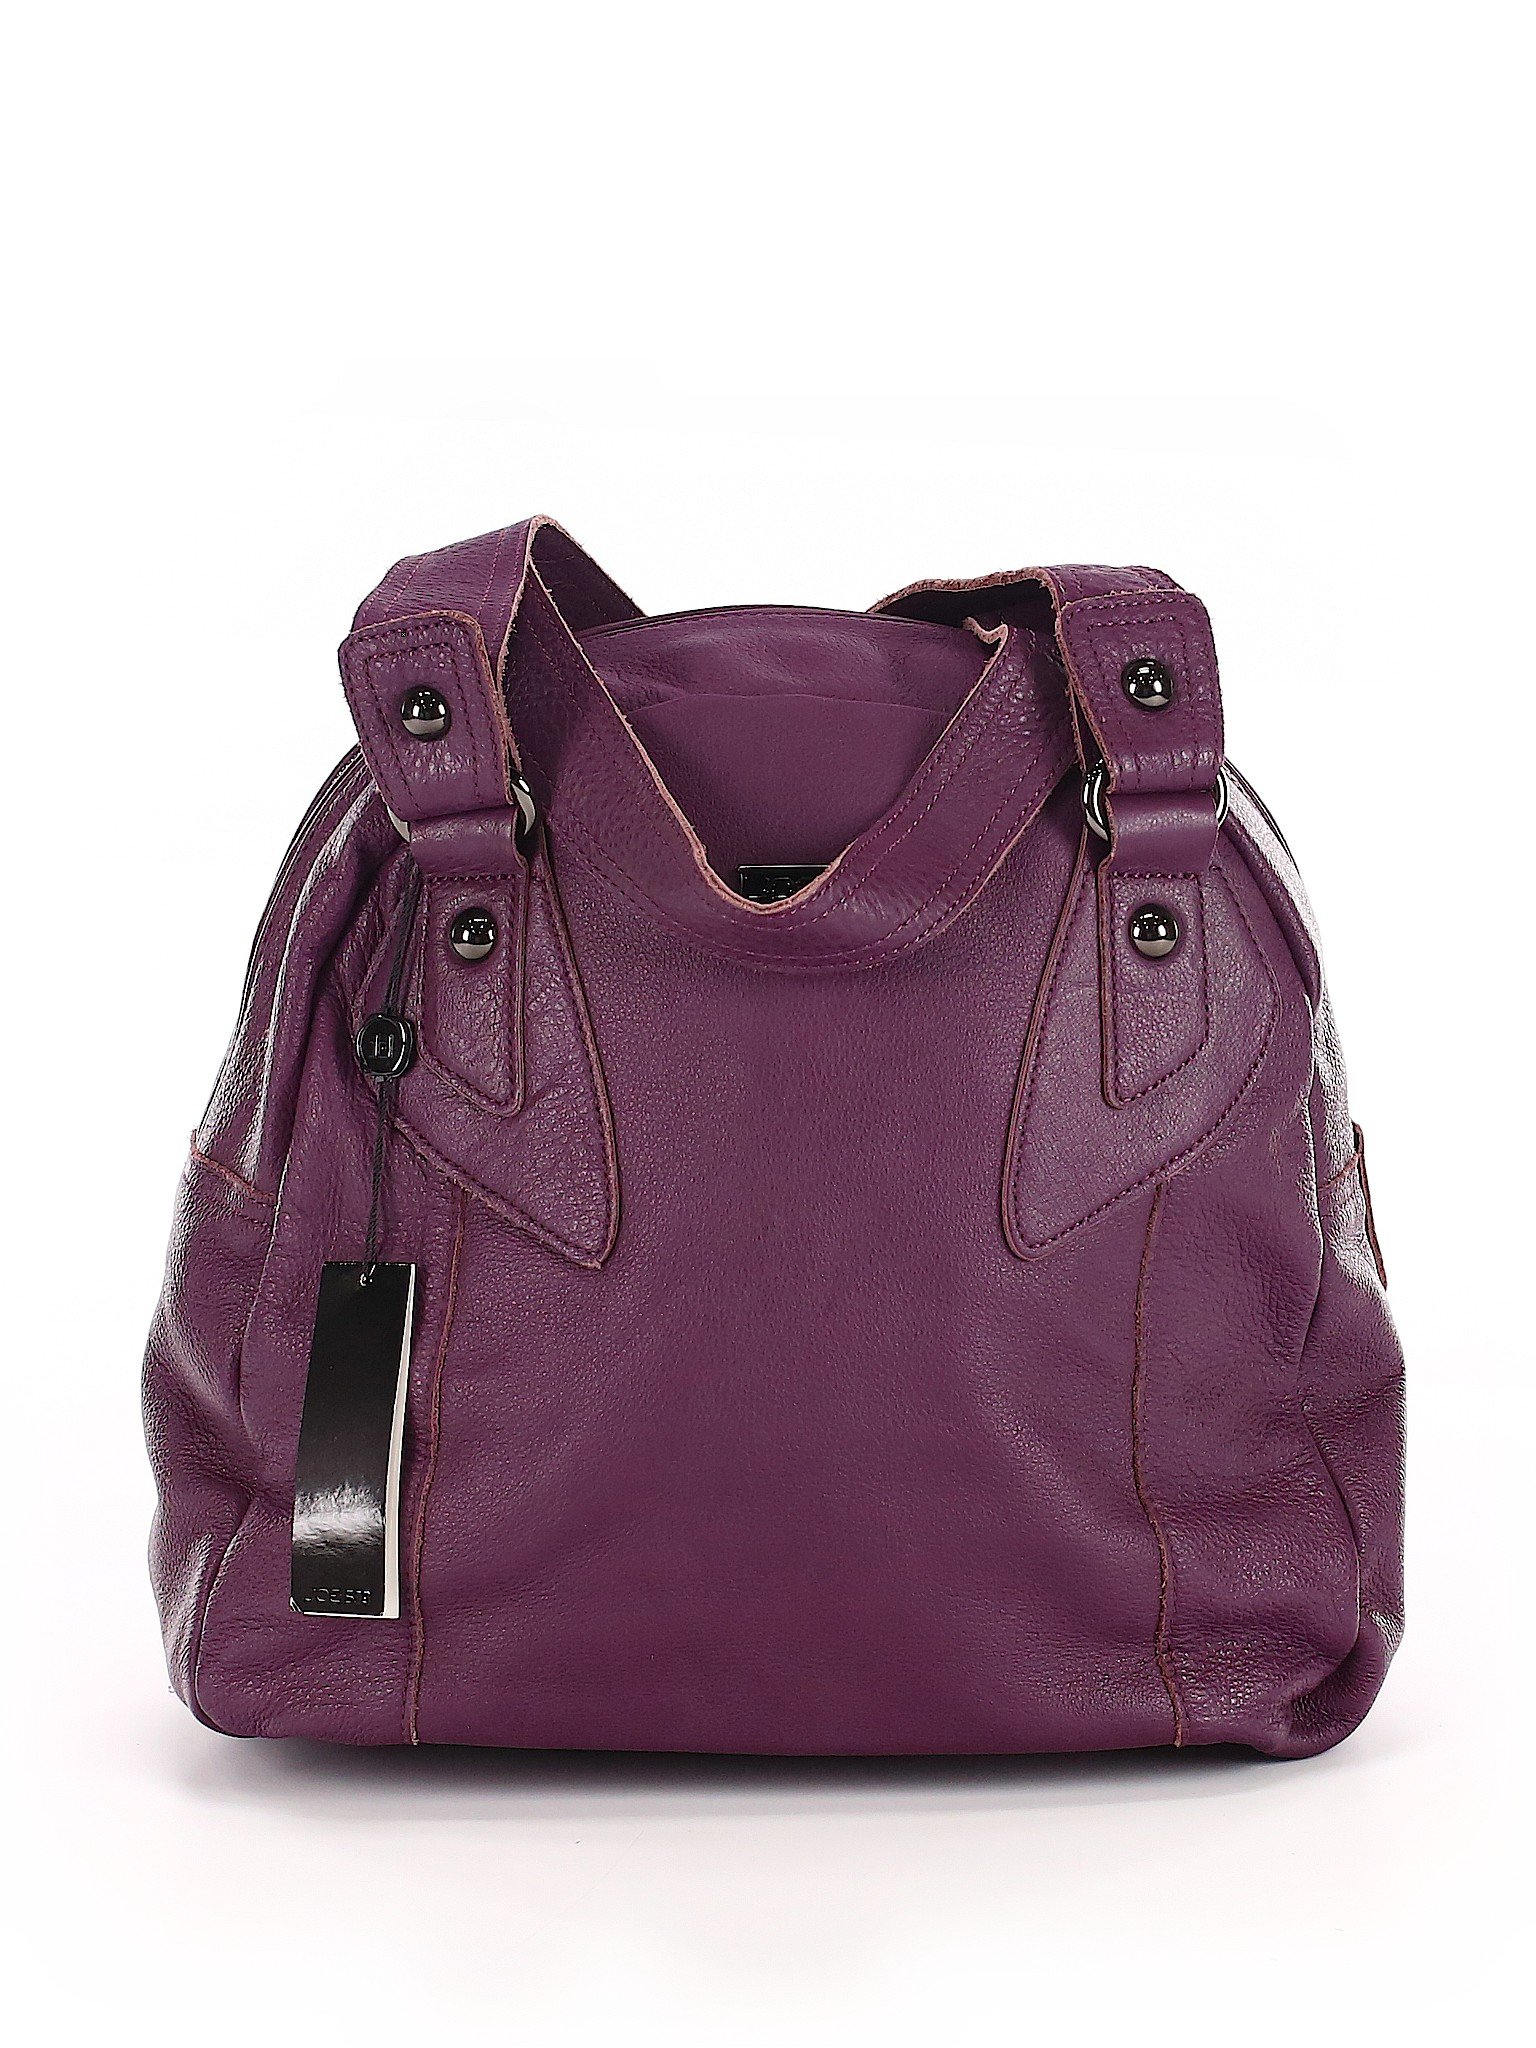 Joe's Jeans Solid Purple Shoulder Bag One Size - 75% off | thredUP